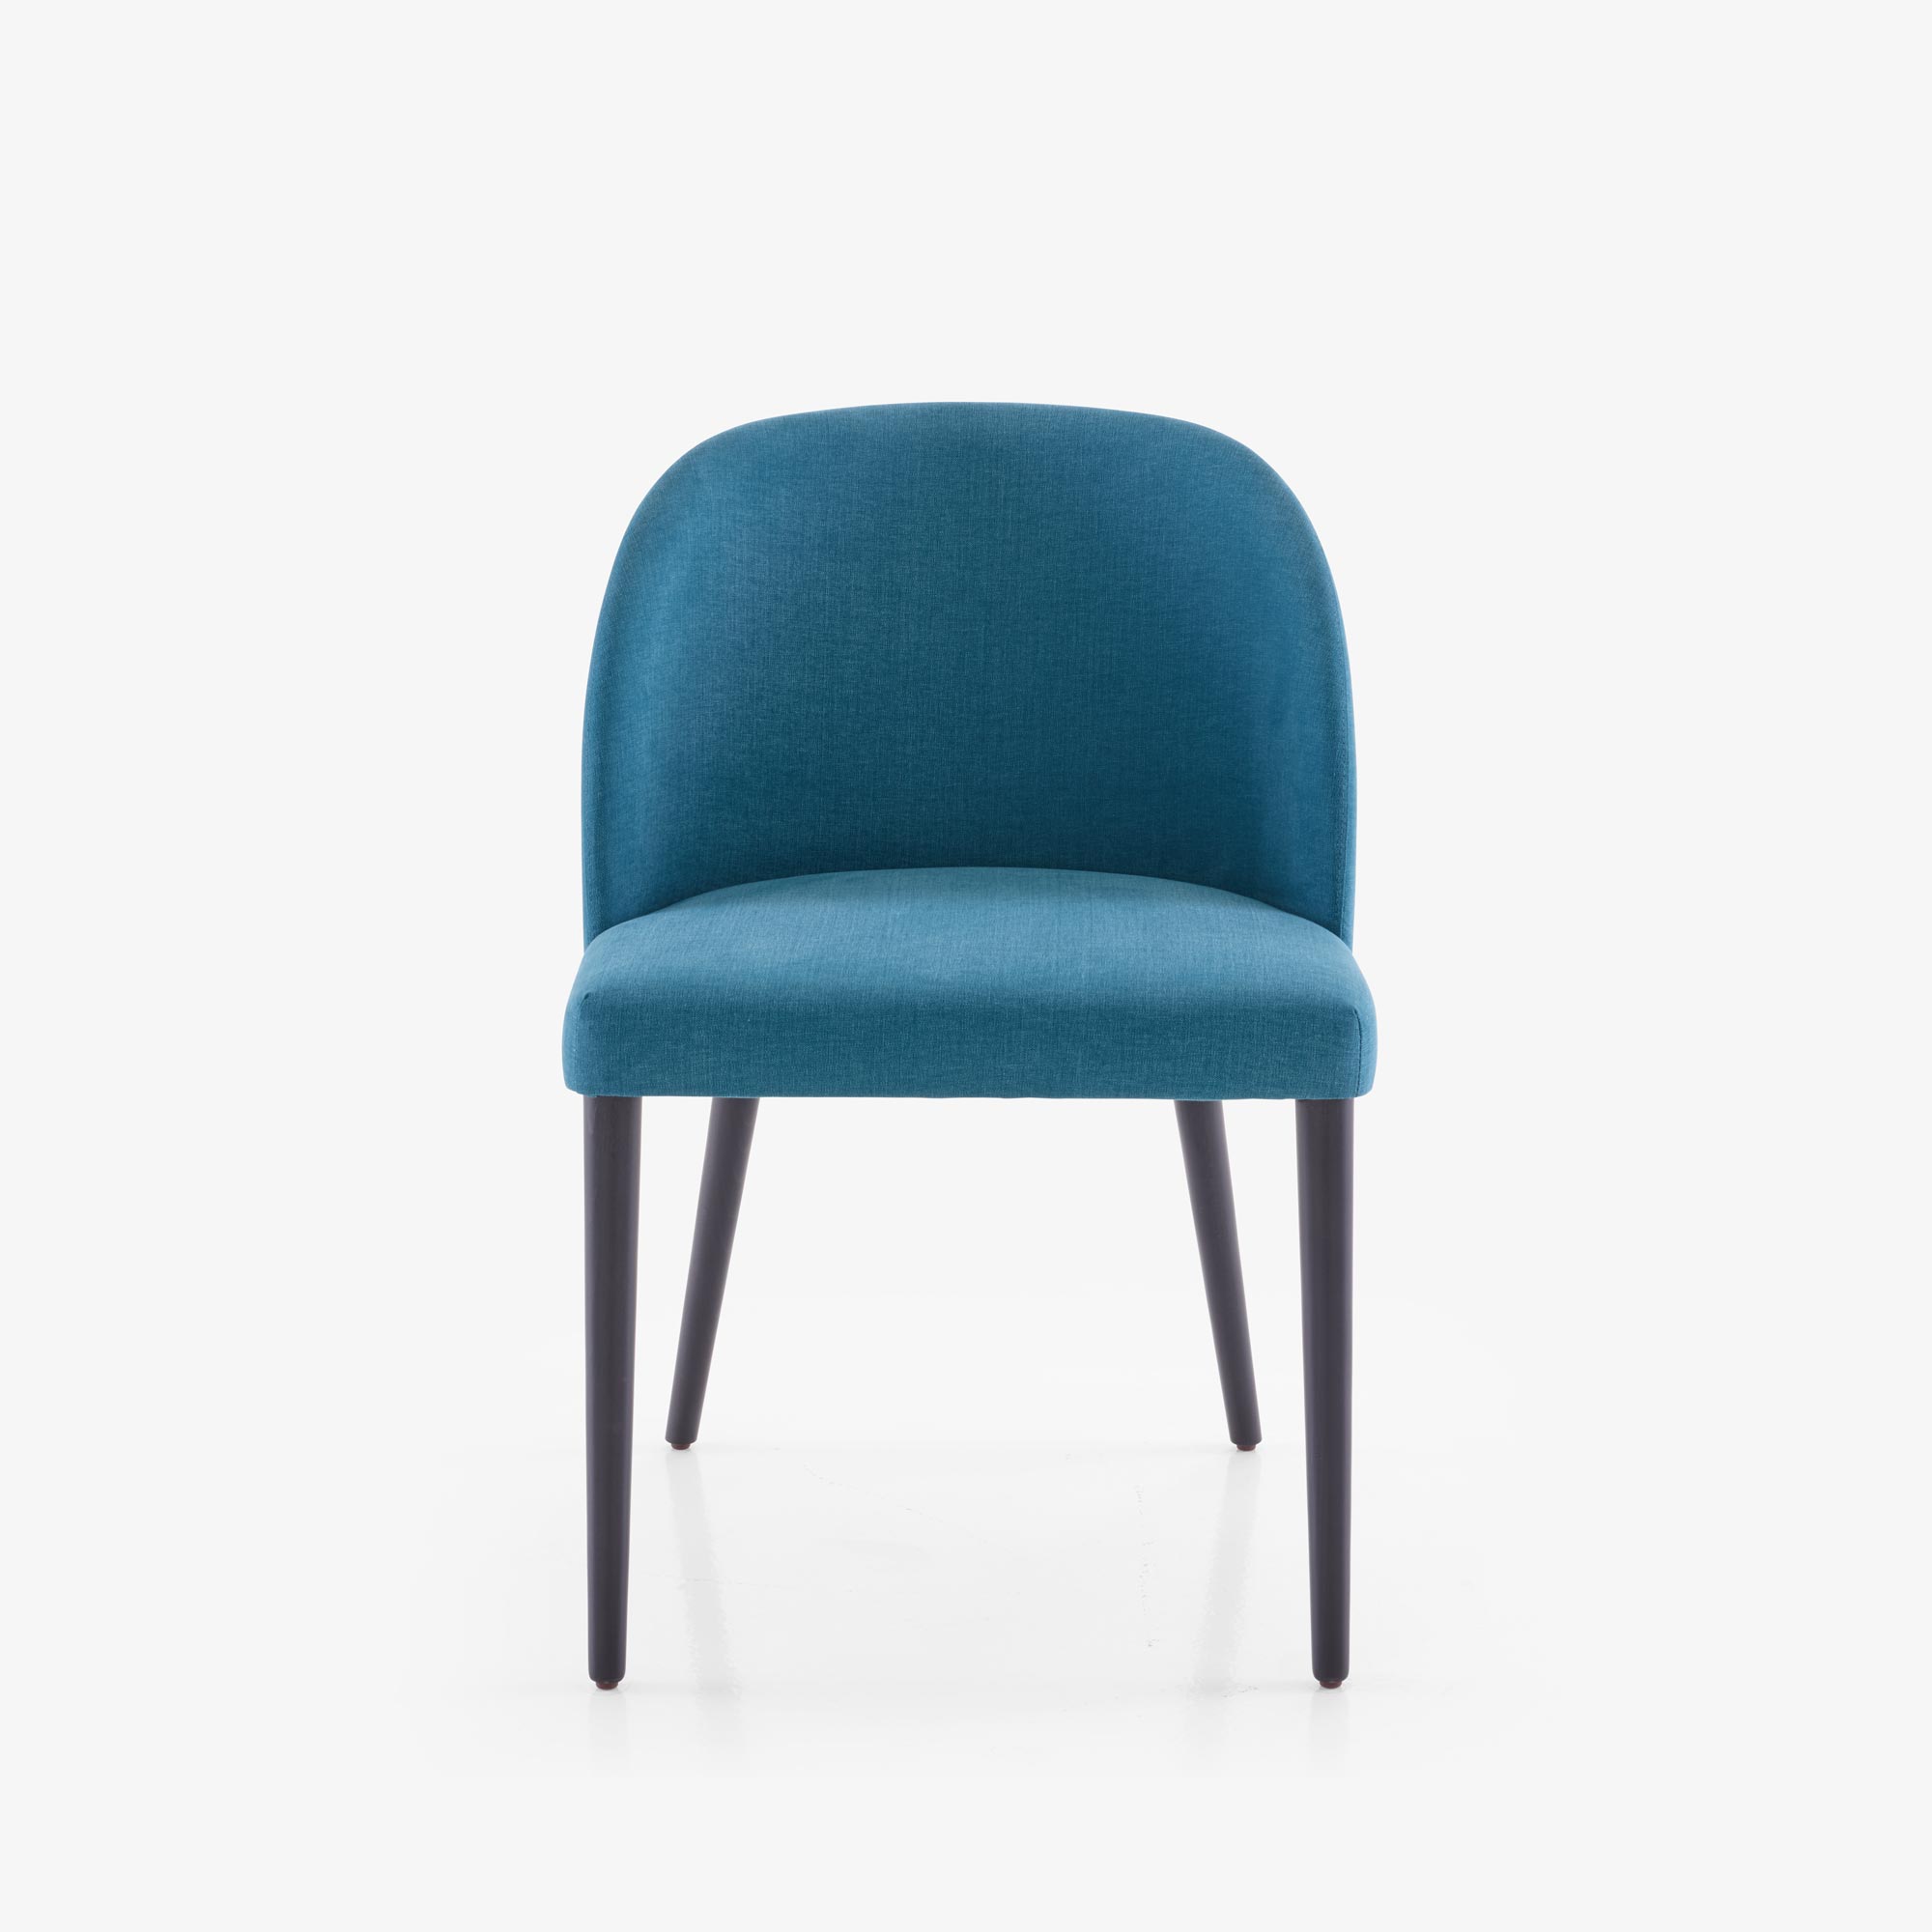 Image Chair fabric-bleu canard (duck-egg blue)  1